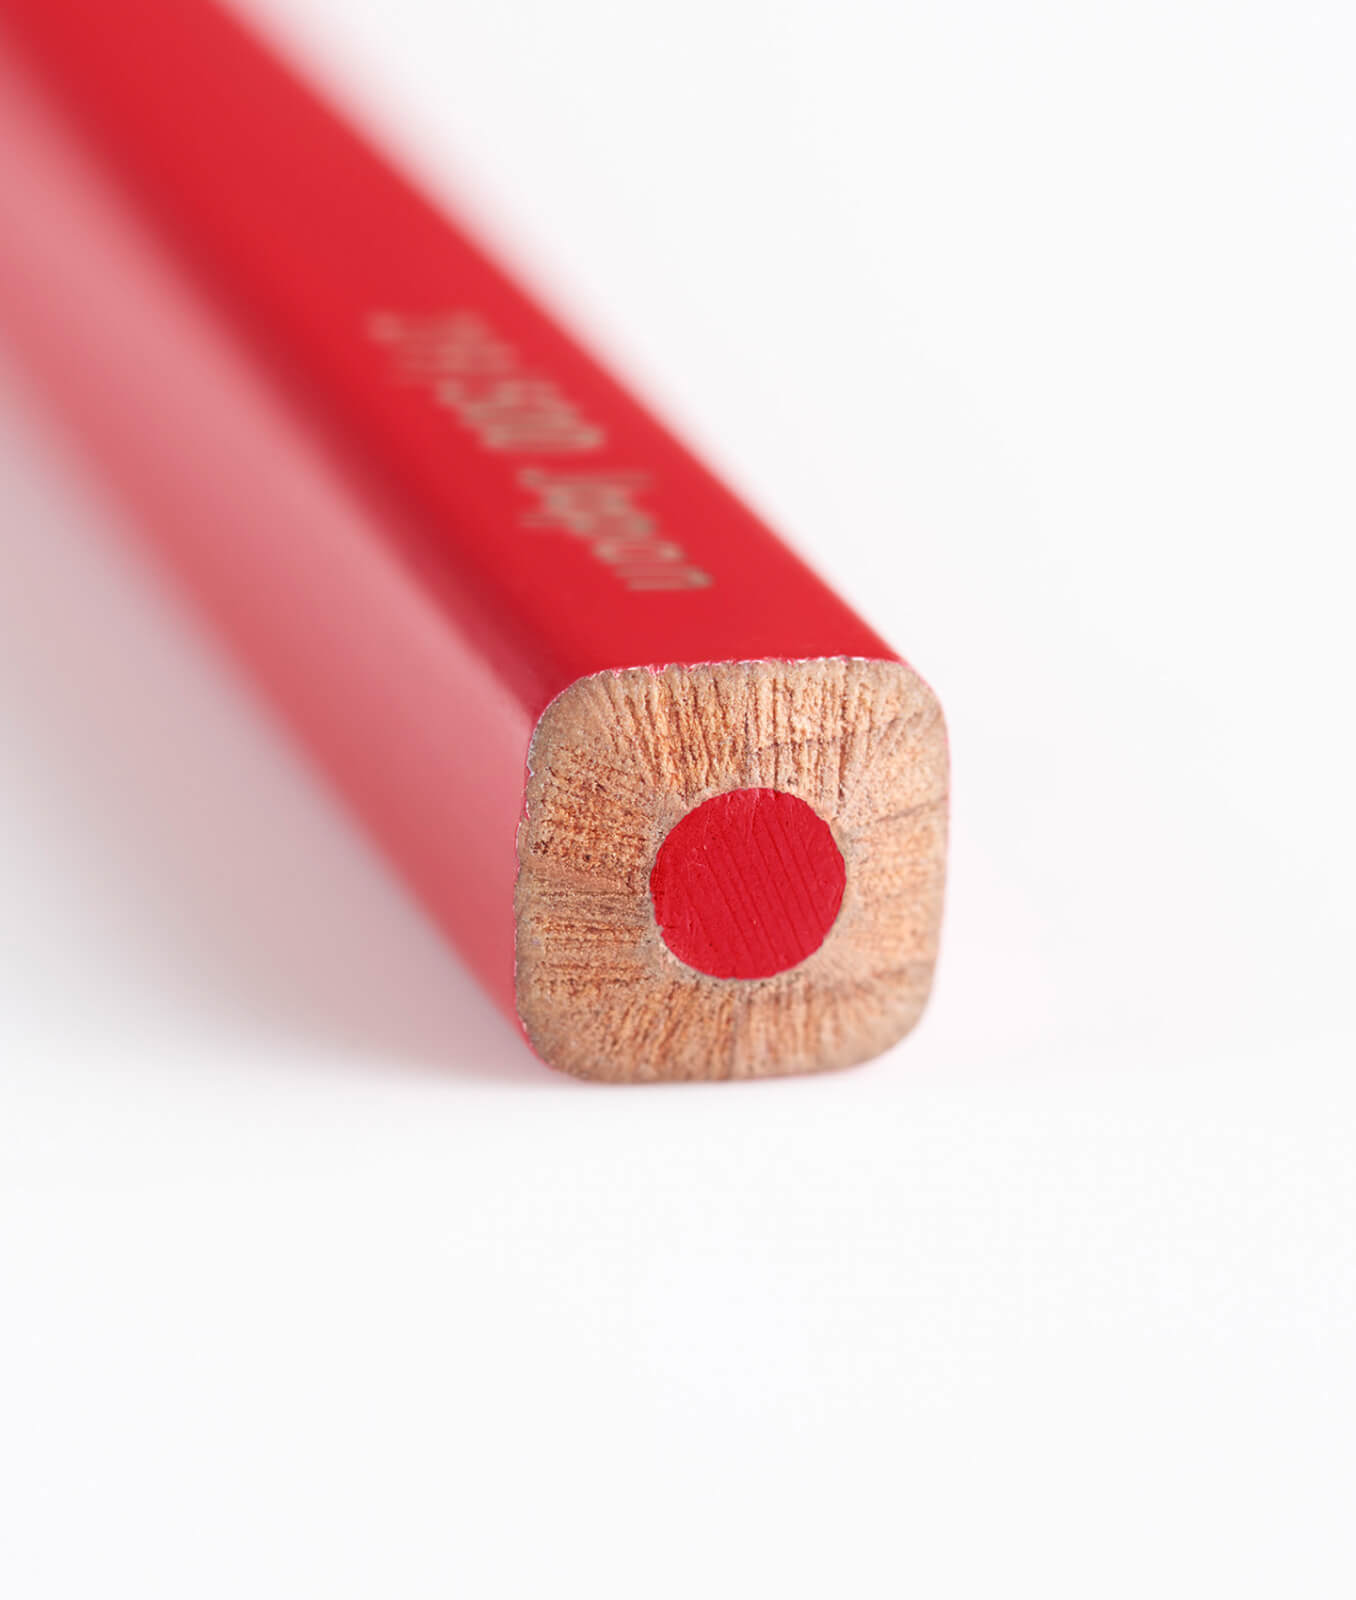 500 Colored Pencils | SHIFTBRAIN inc.